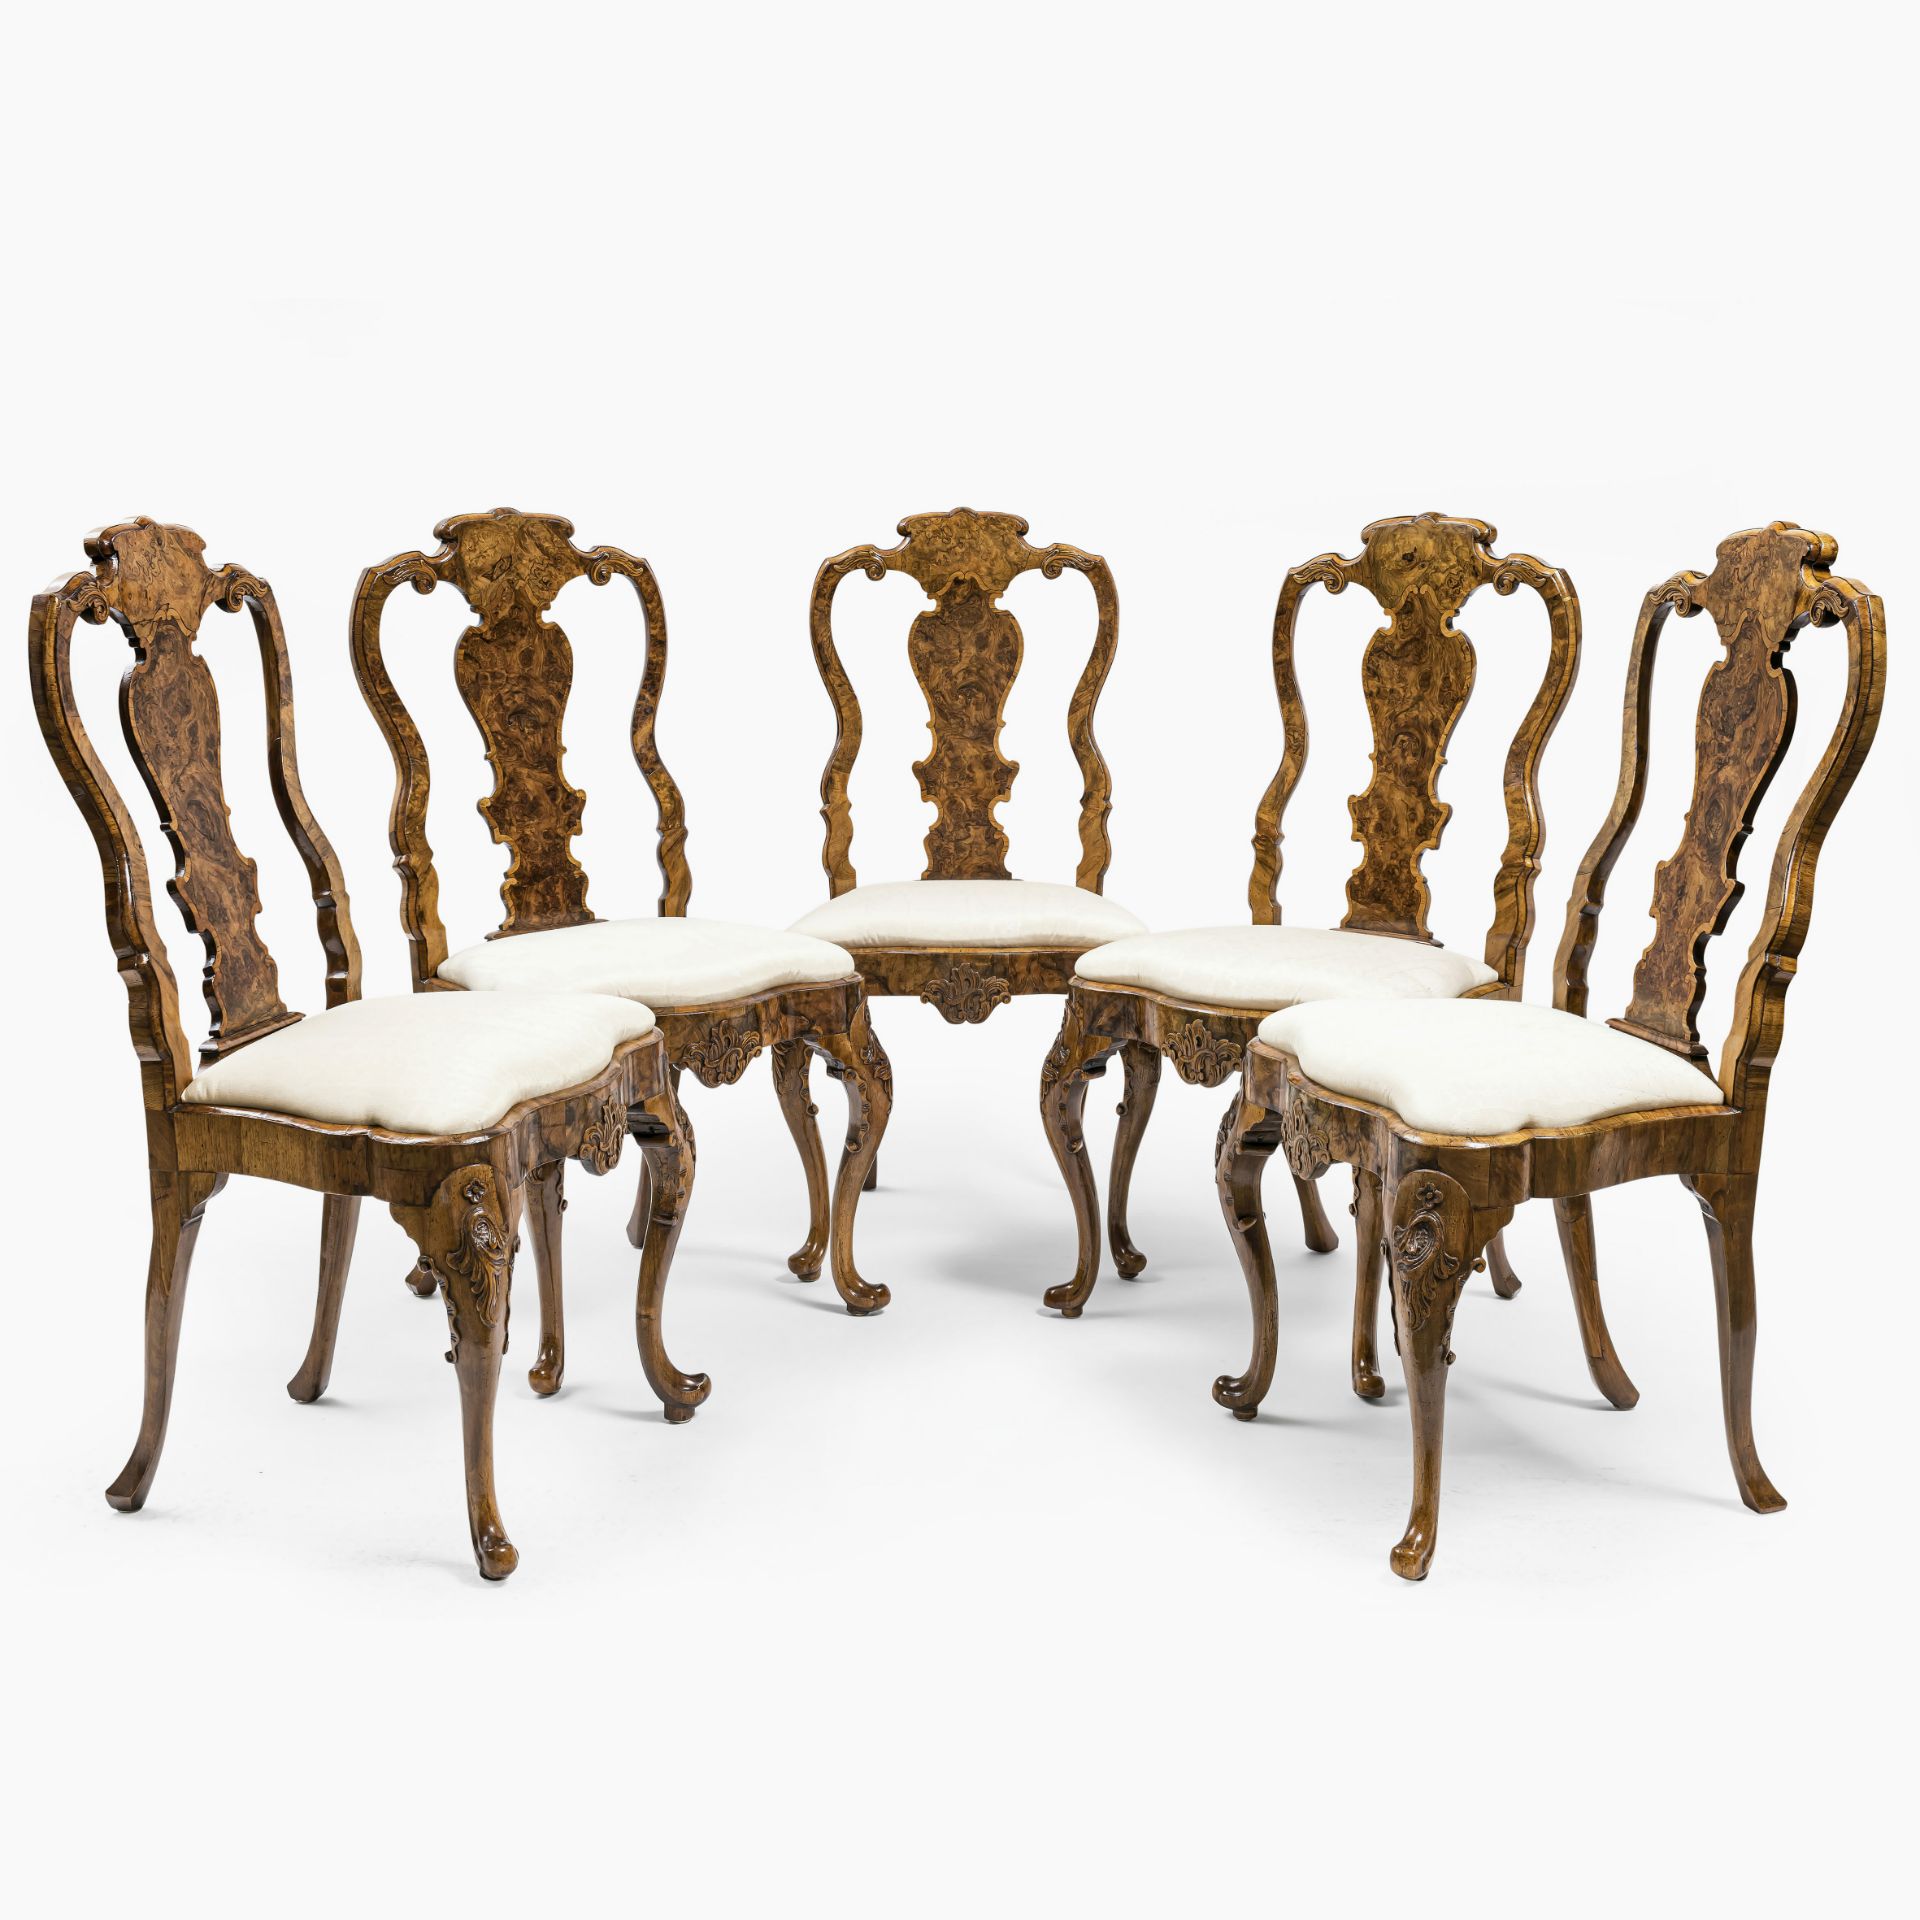 A set of five chairs - Abraham Roentgen manufactory (1711 Mülheim am Rhein - 1793 Herrnhut), Neuwied - Image 7 of 9